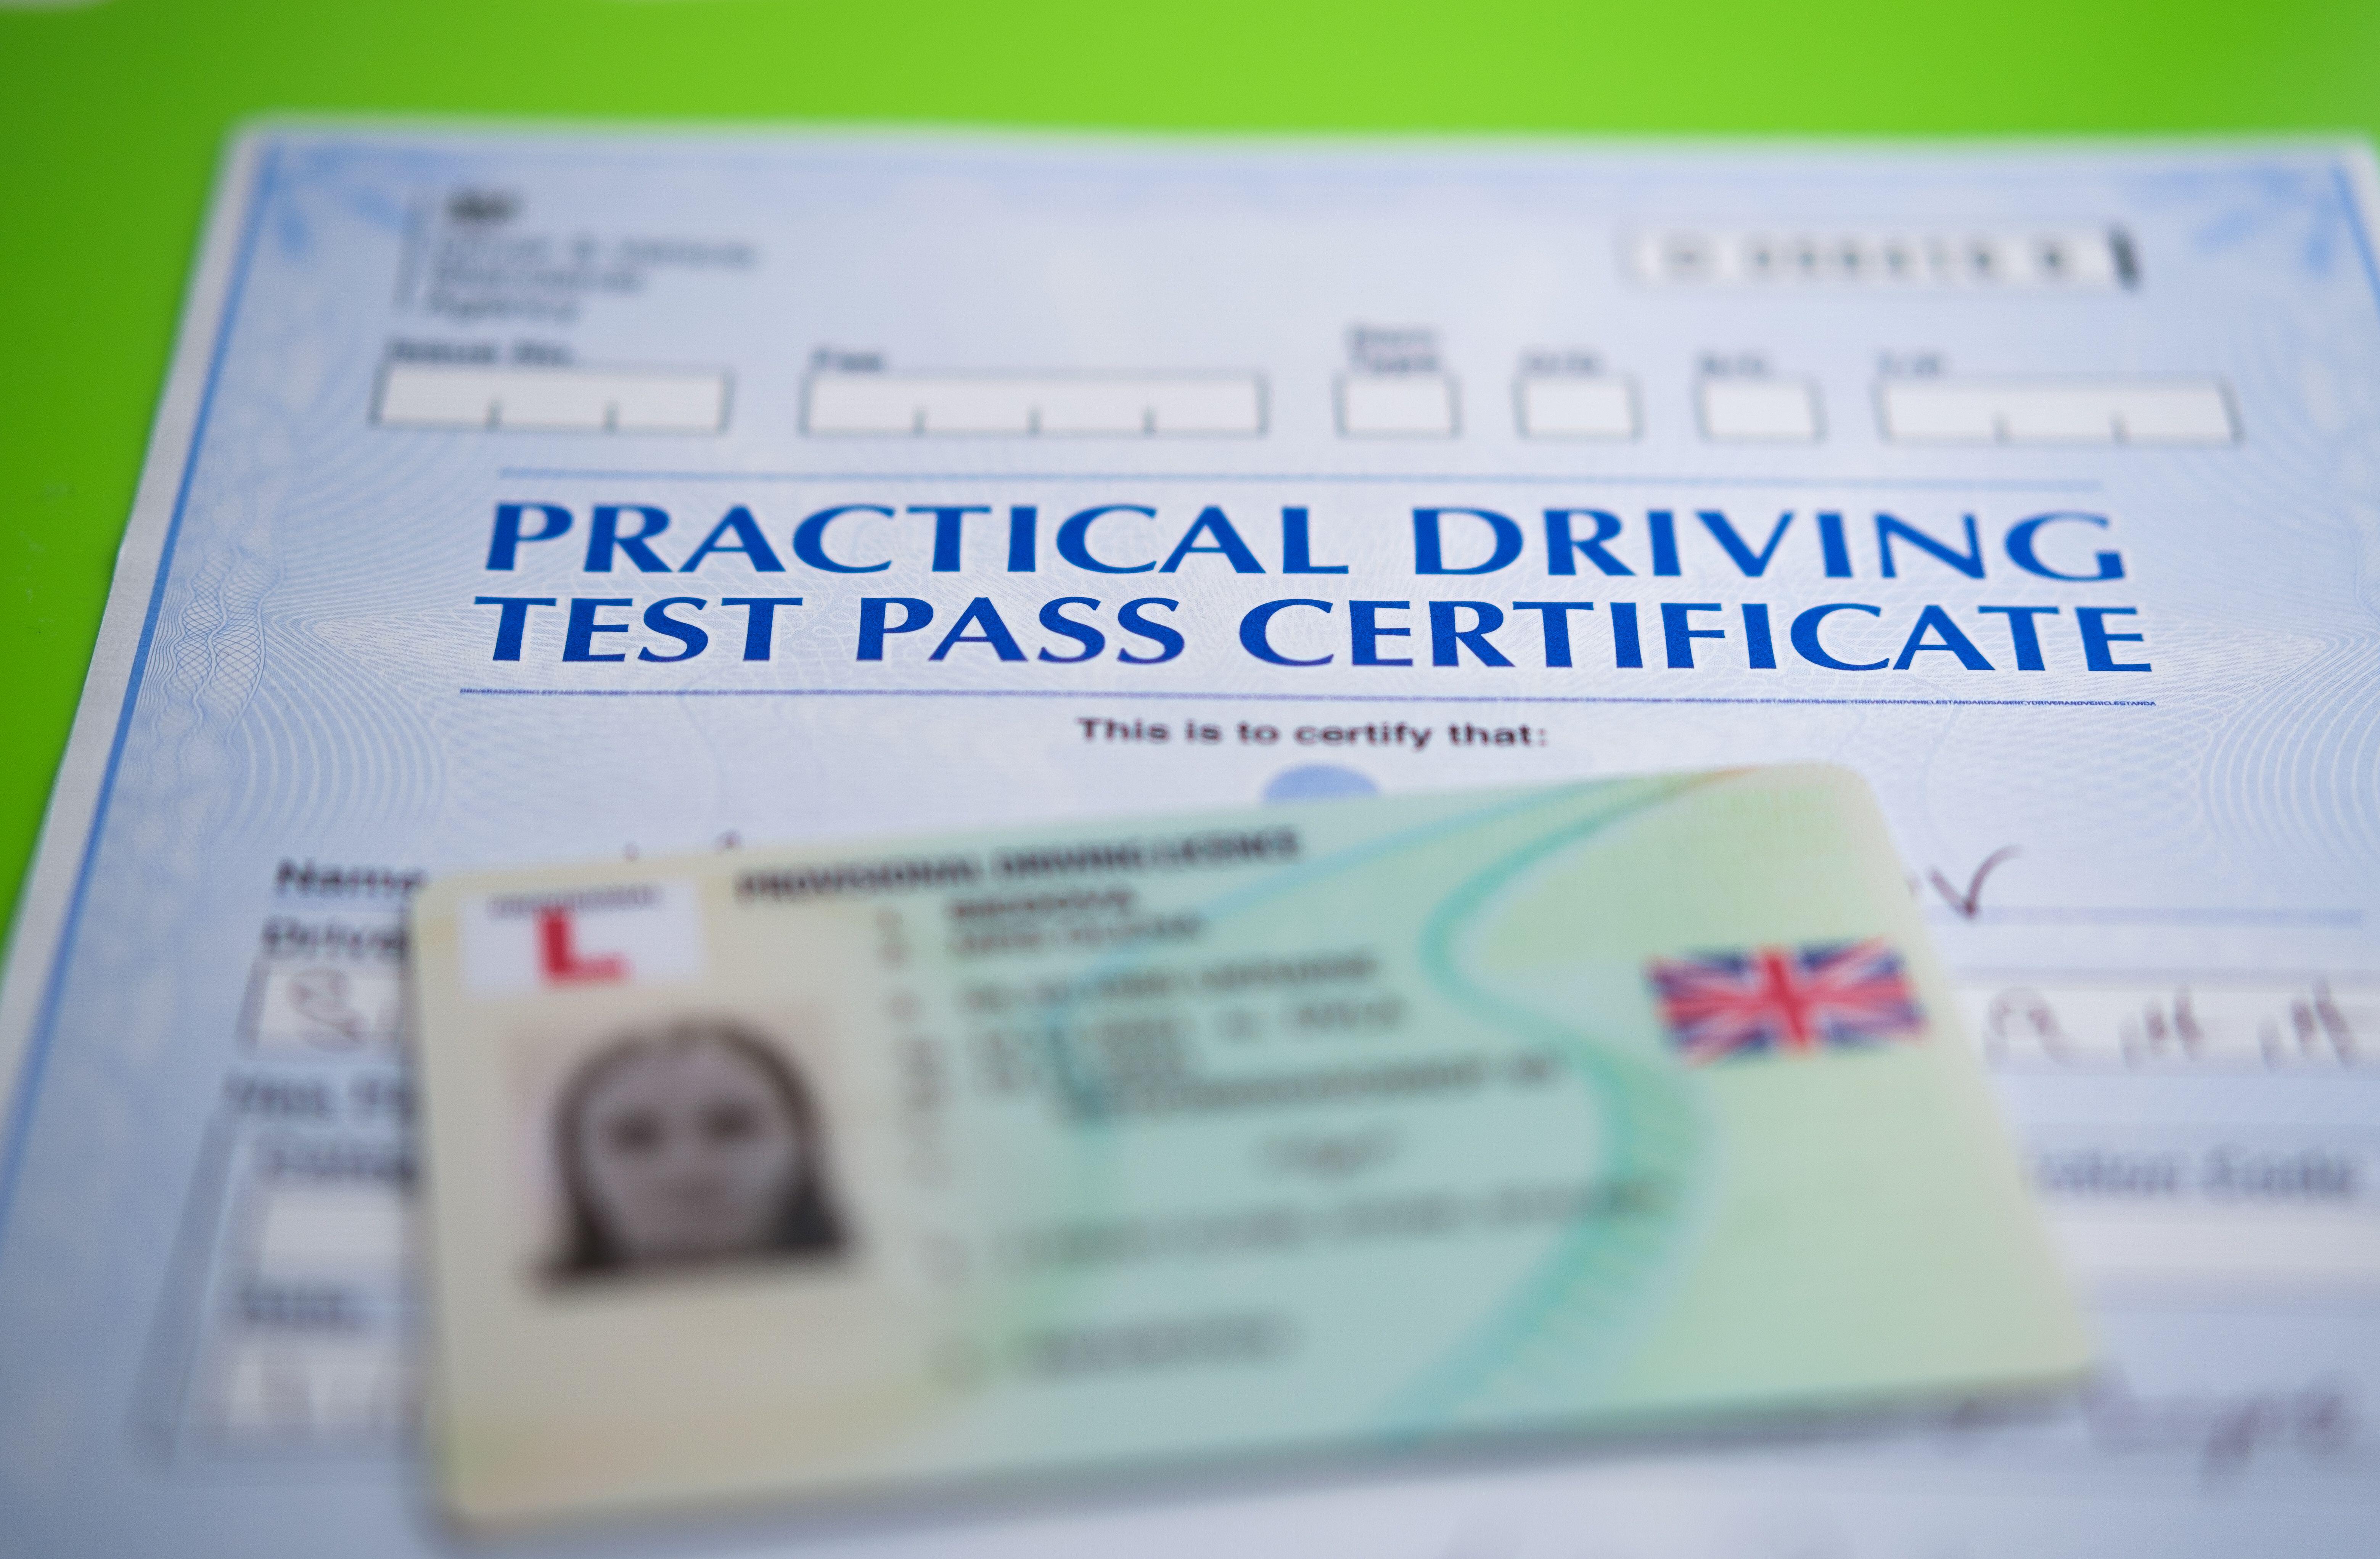 Eine Studie der AA Driving School ergab, dass nur 18 Prozent der Briten glauben, sie könnten die Prüfung erfolgreich wiederholen